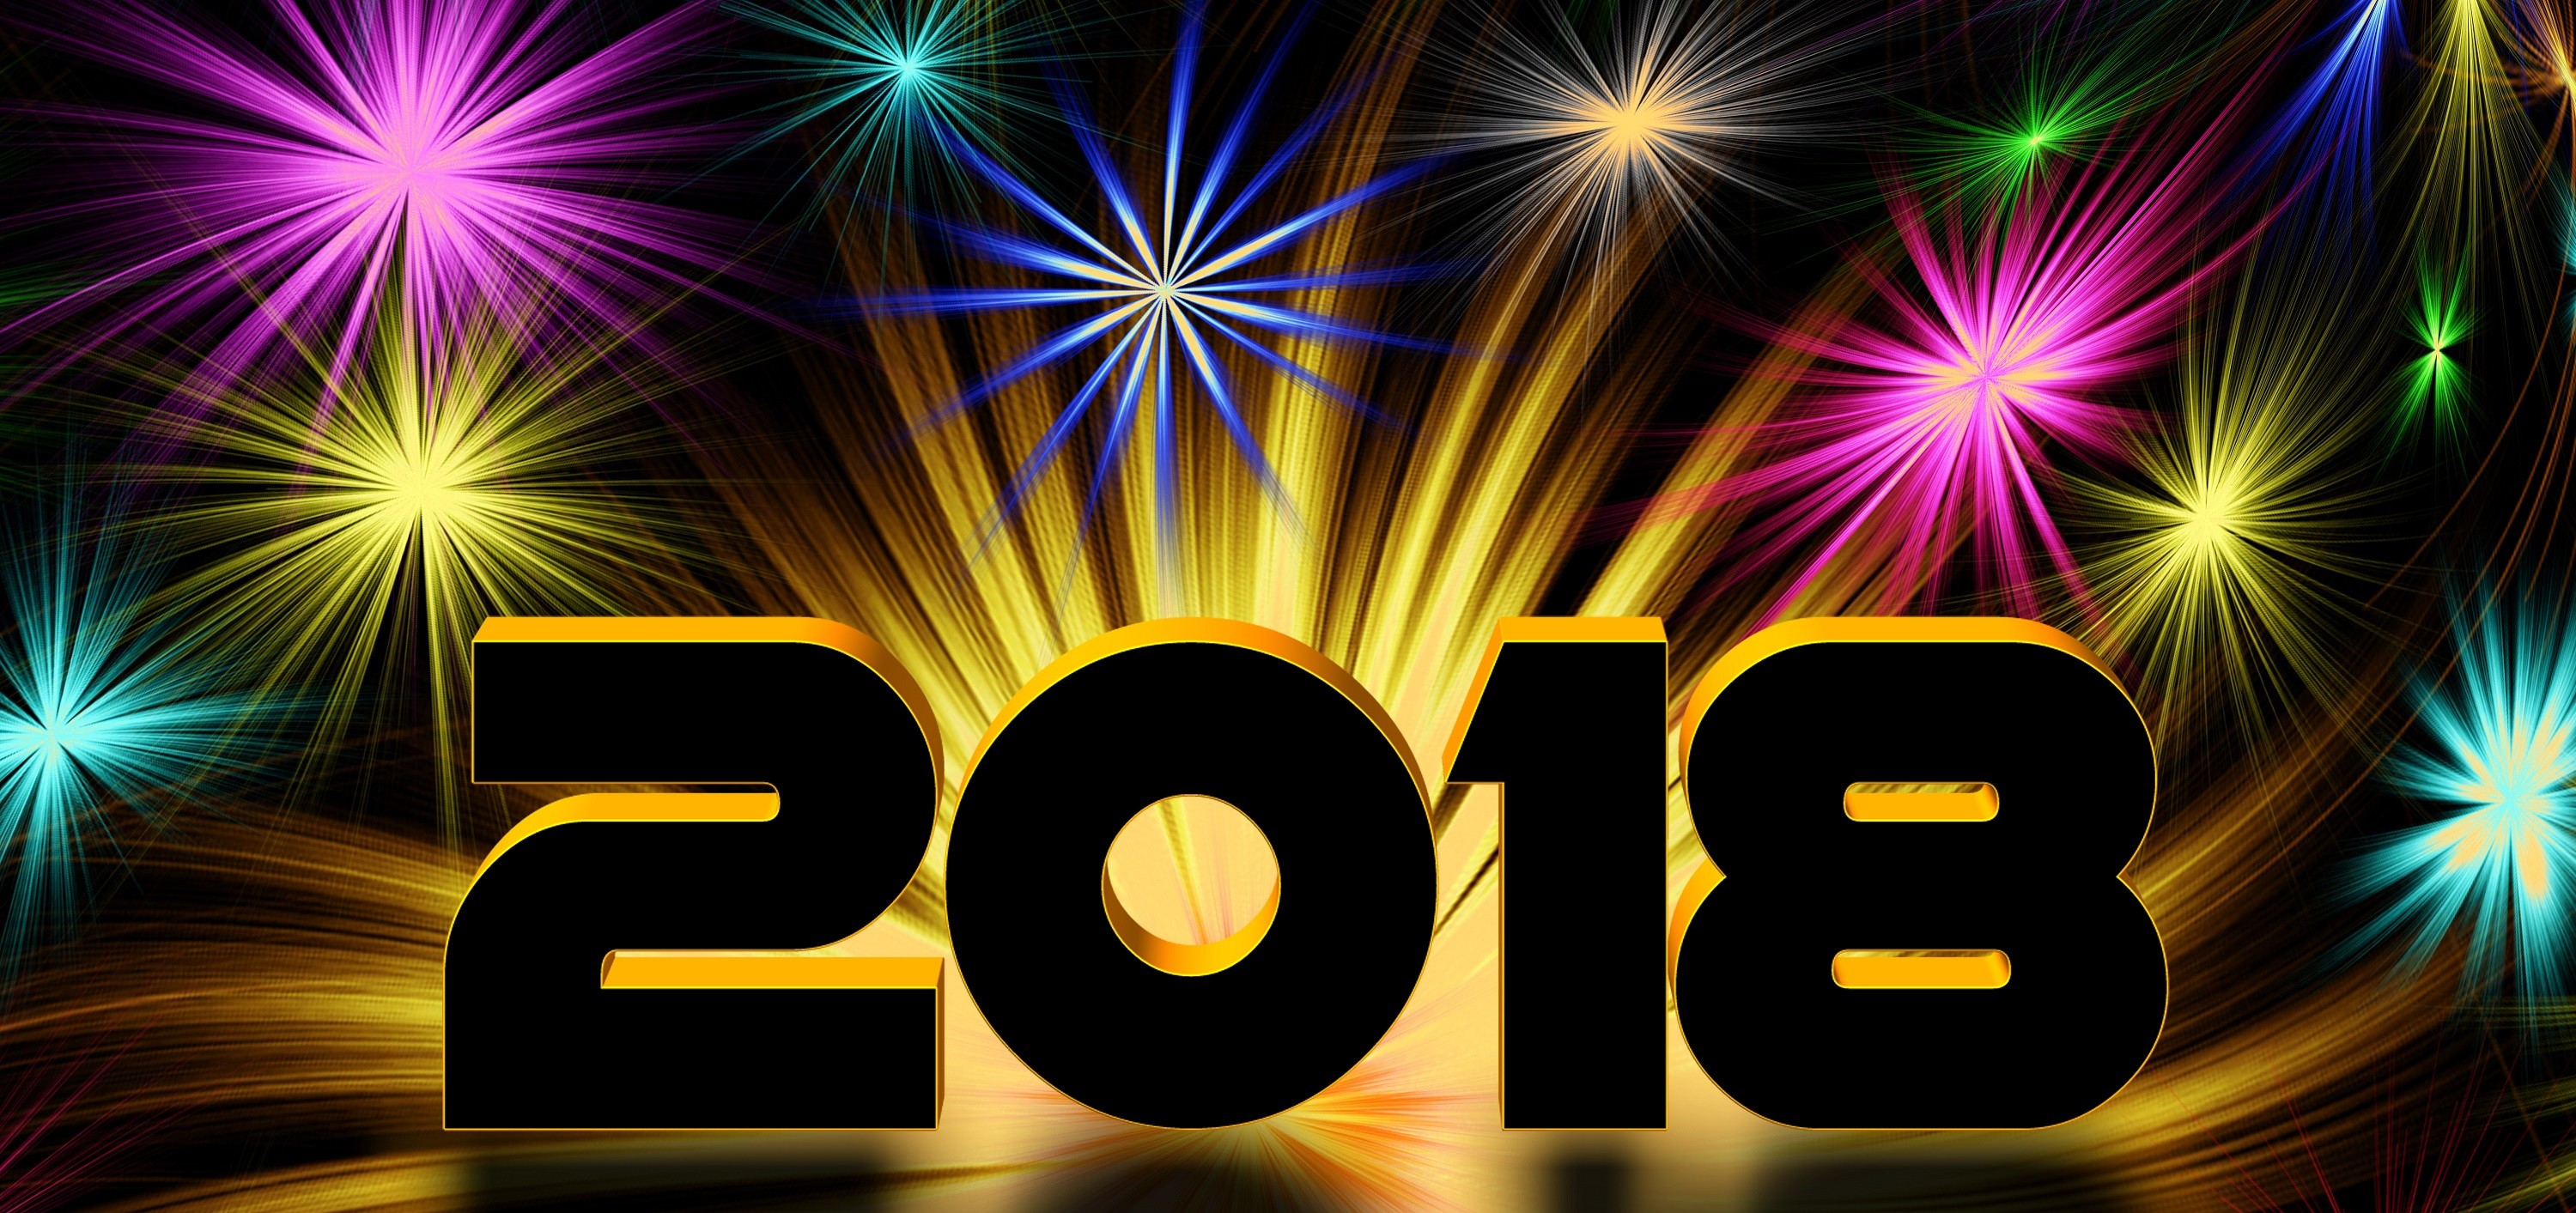 3000x1413 Feiertage - New Year 2018 Neujahr Farben Colorful Wallpaper